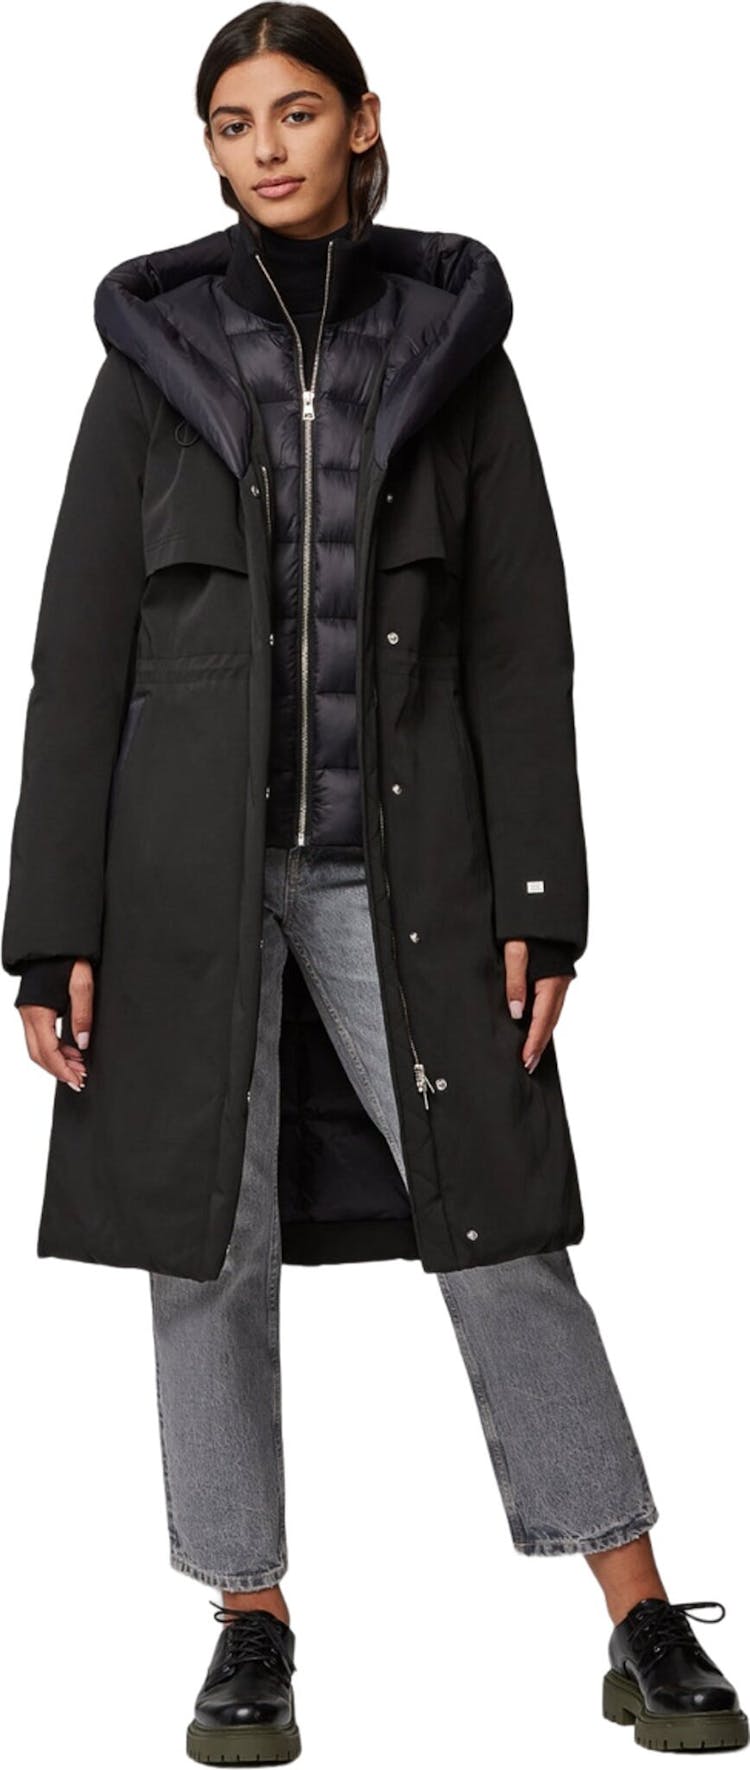 Numéro de l'image de la galerie de produits 5 pour le produit Manteau semi-ajusté en duvet classique avec capuchon Samara-TD - Femme